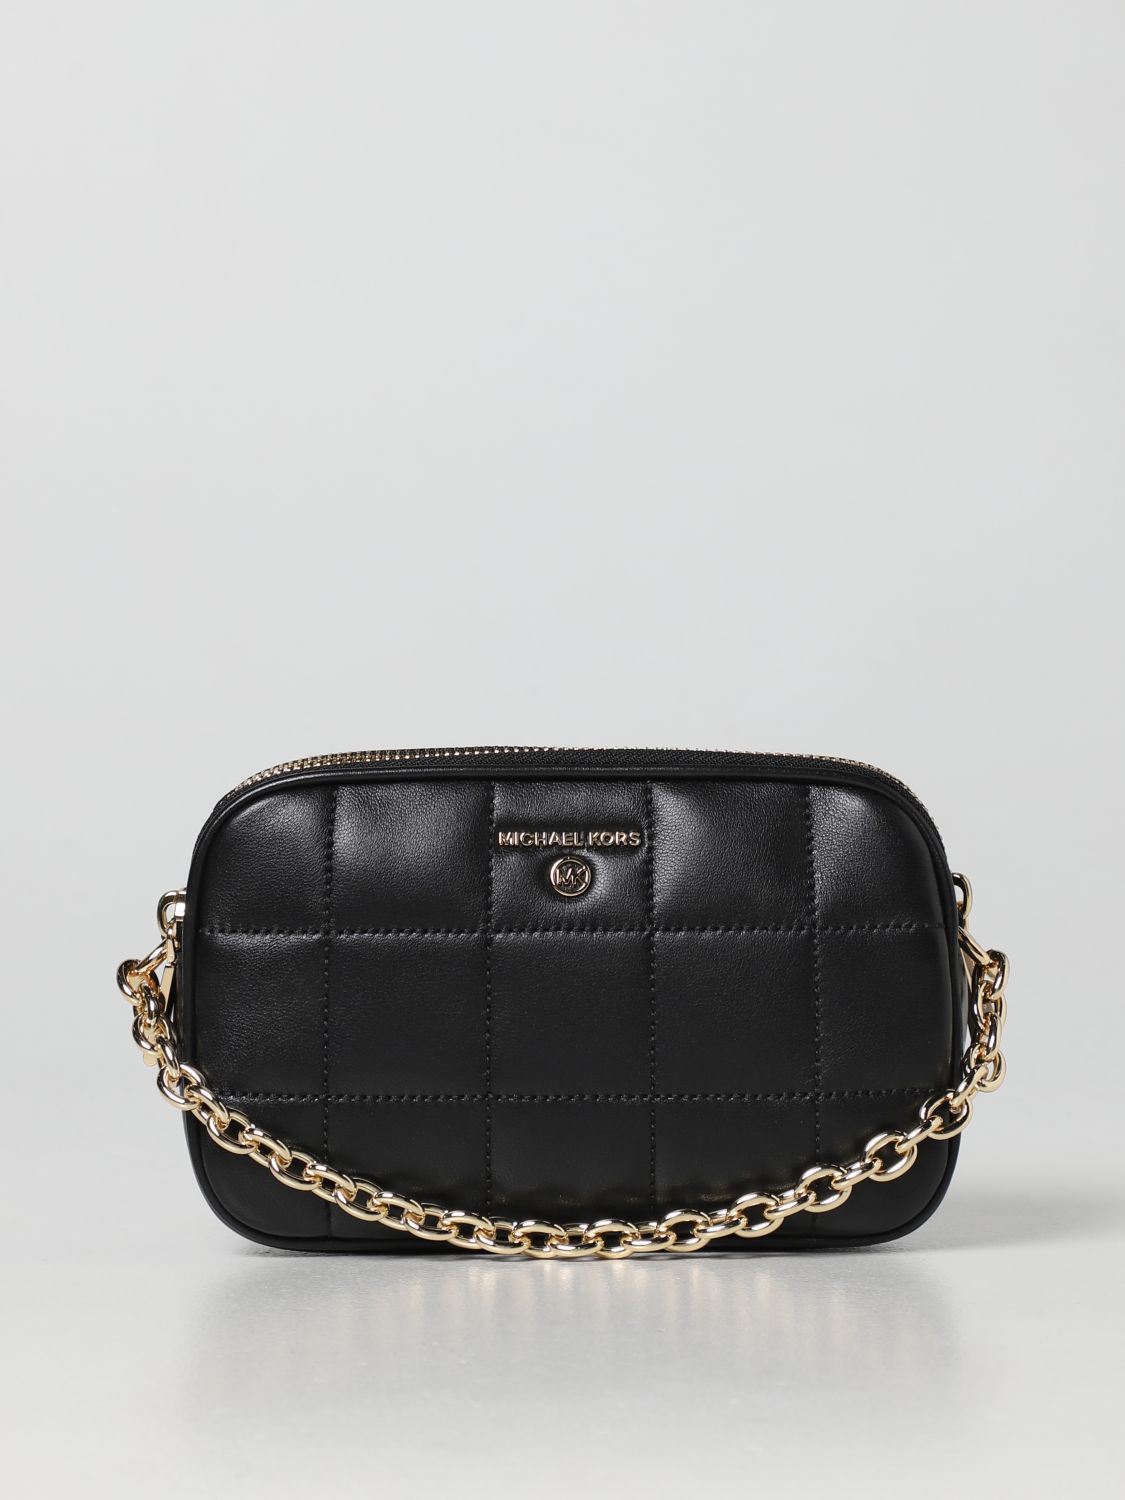 MICHAEL KORS: mini bag for woman - Black